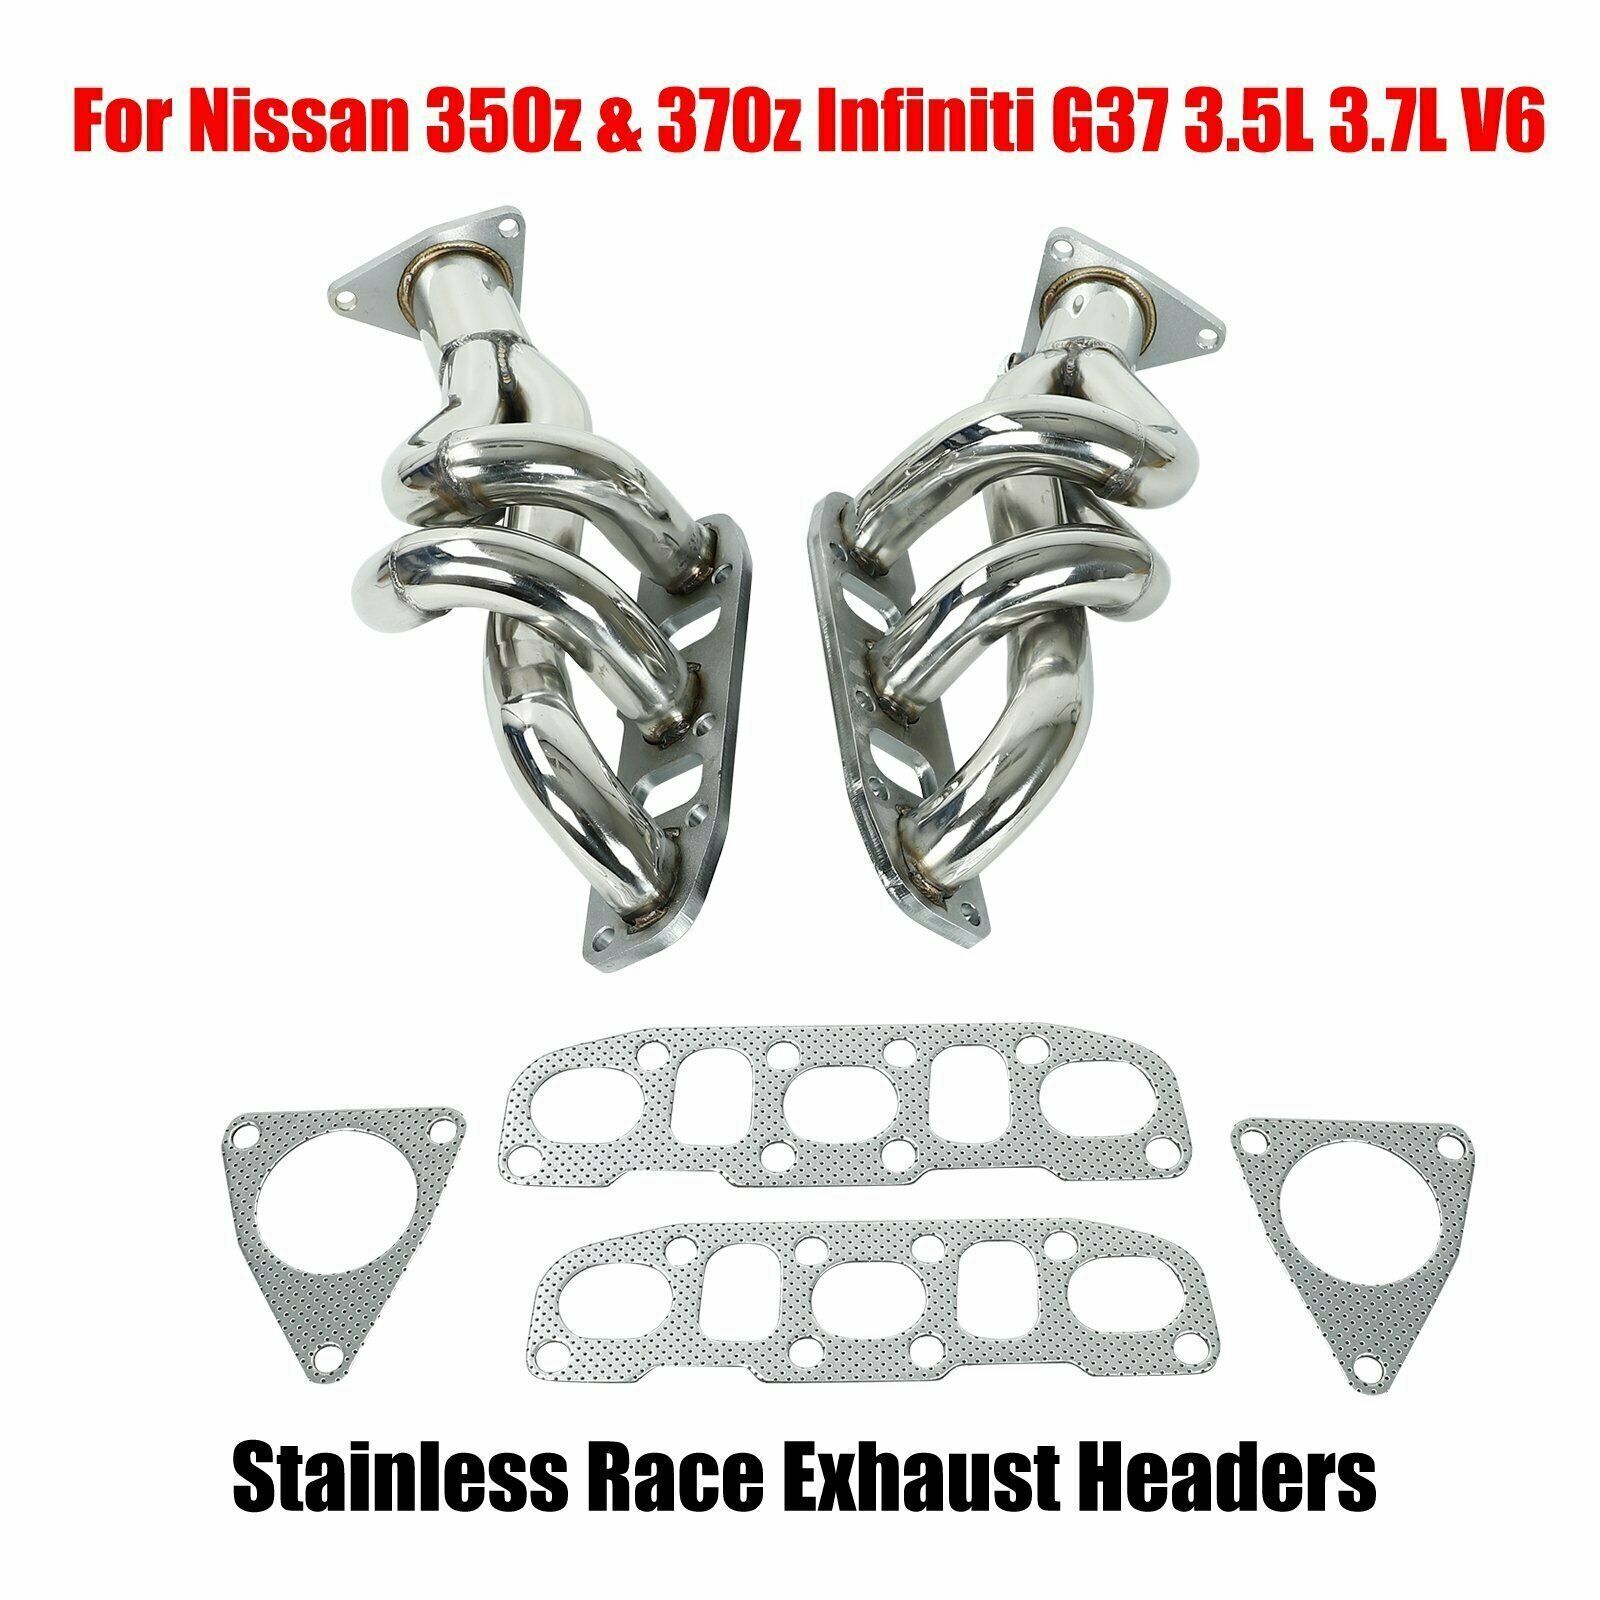 Headers For Nissan 350z & 370z Infiniti G37 3.5L 3.7L V6 3.5 3.7 Stainless Steel